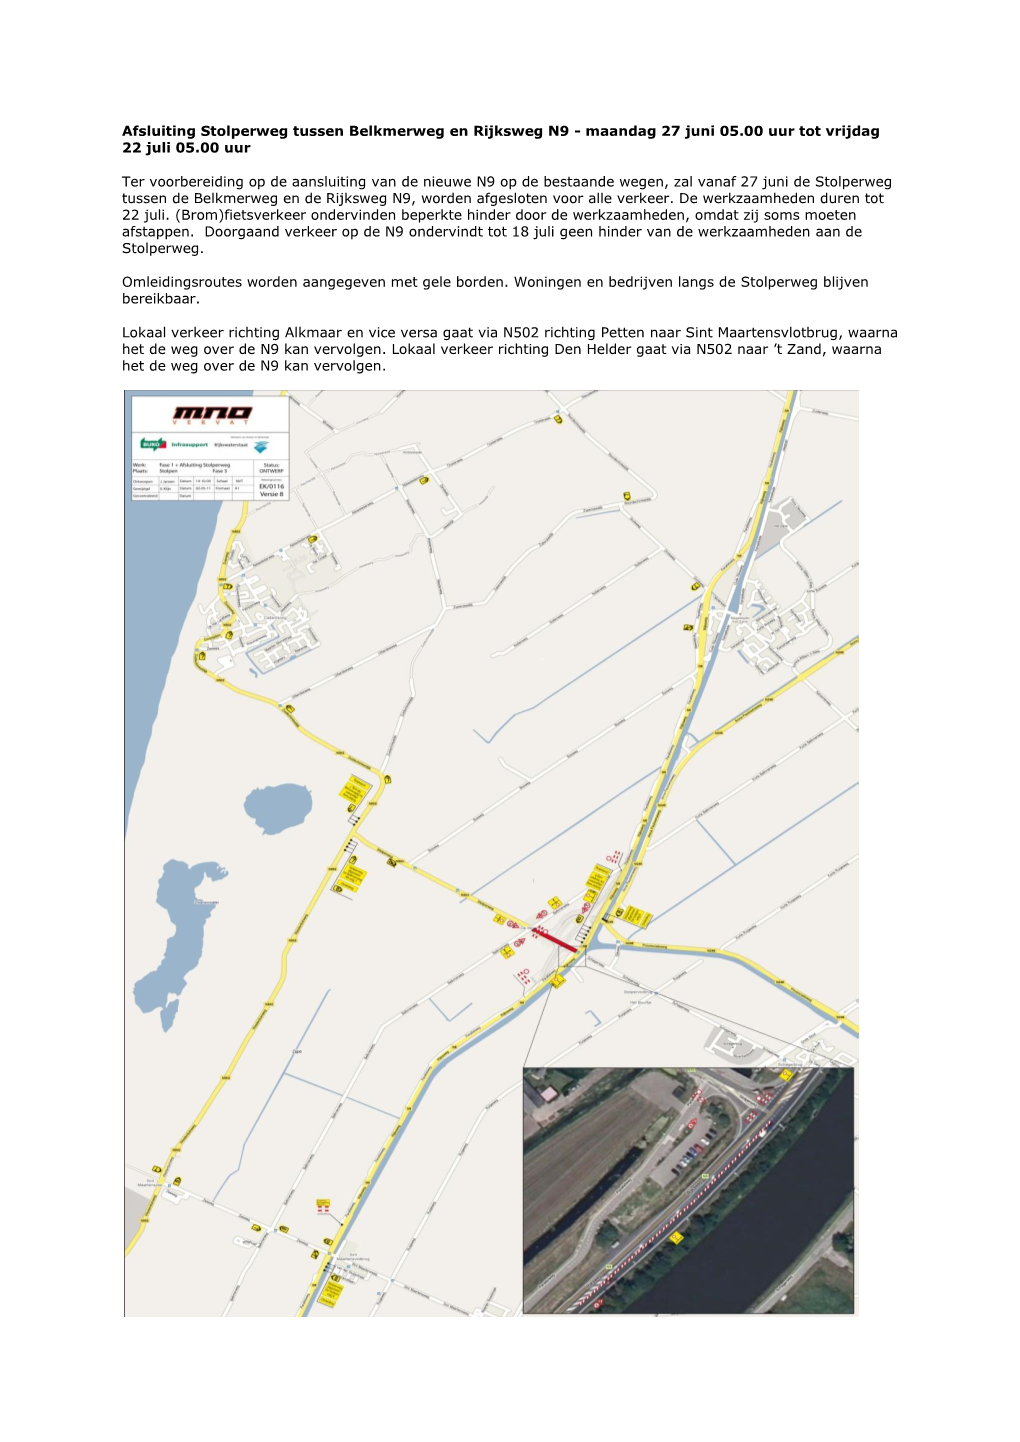 Afsluiting Stolperweg Tussen Belkmerweg En Rijksweg N9 - Maandag 27 Juni 05.00 Uur Tot Vrijdag 22 Juli 05.00 Uur